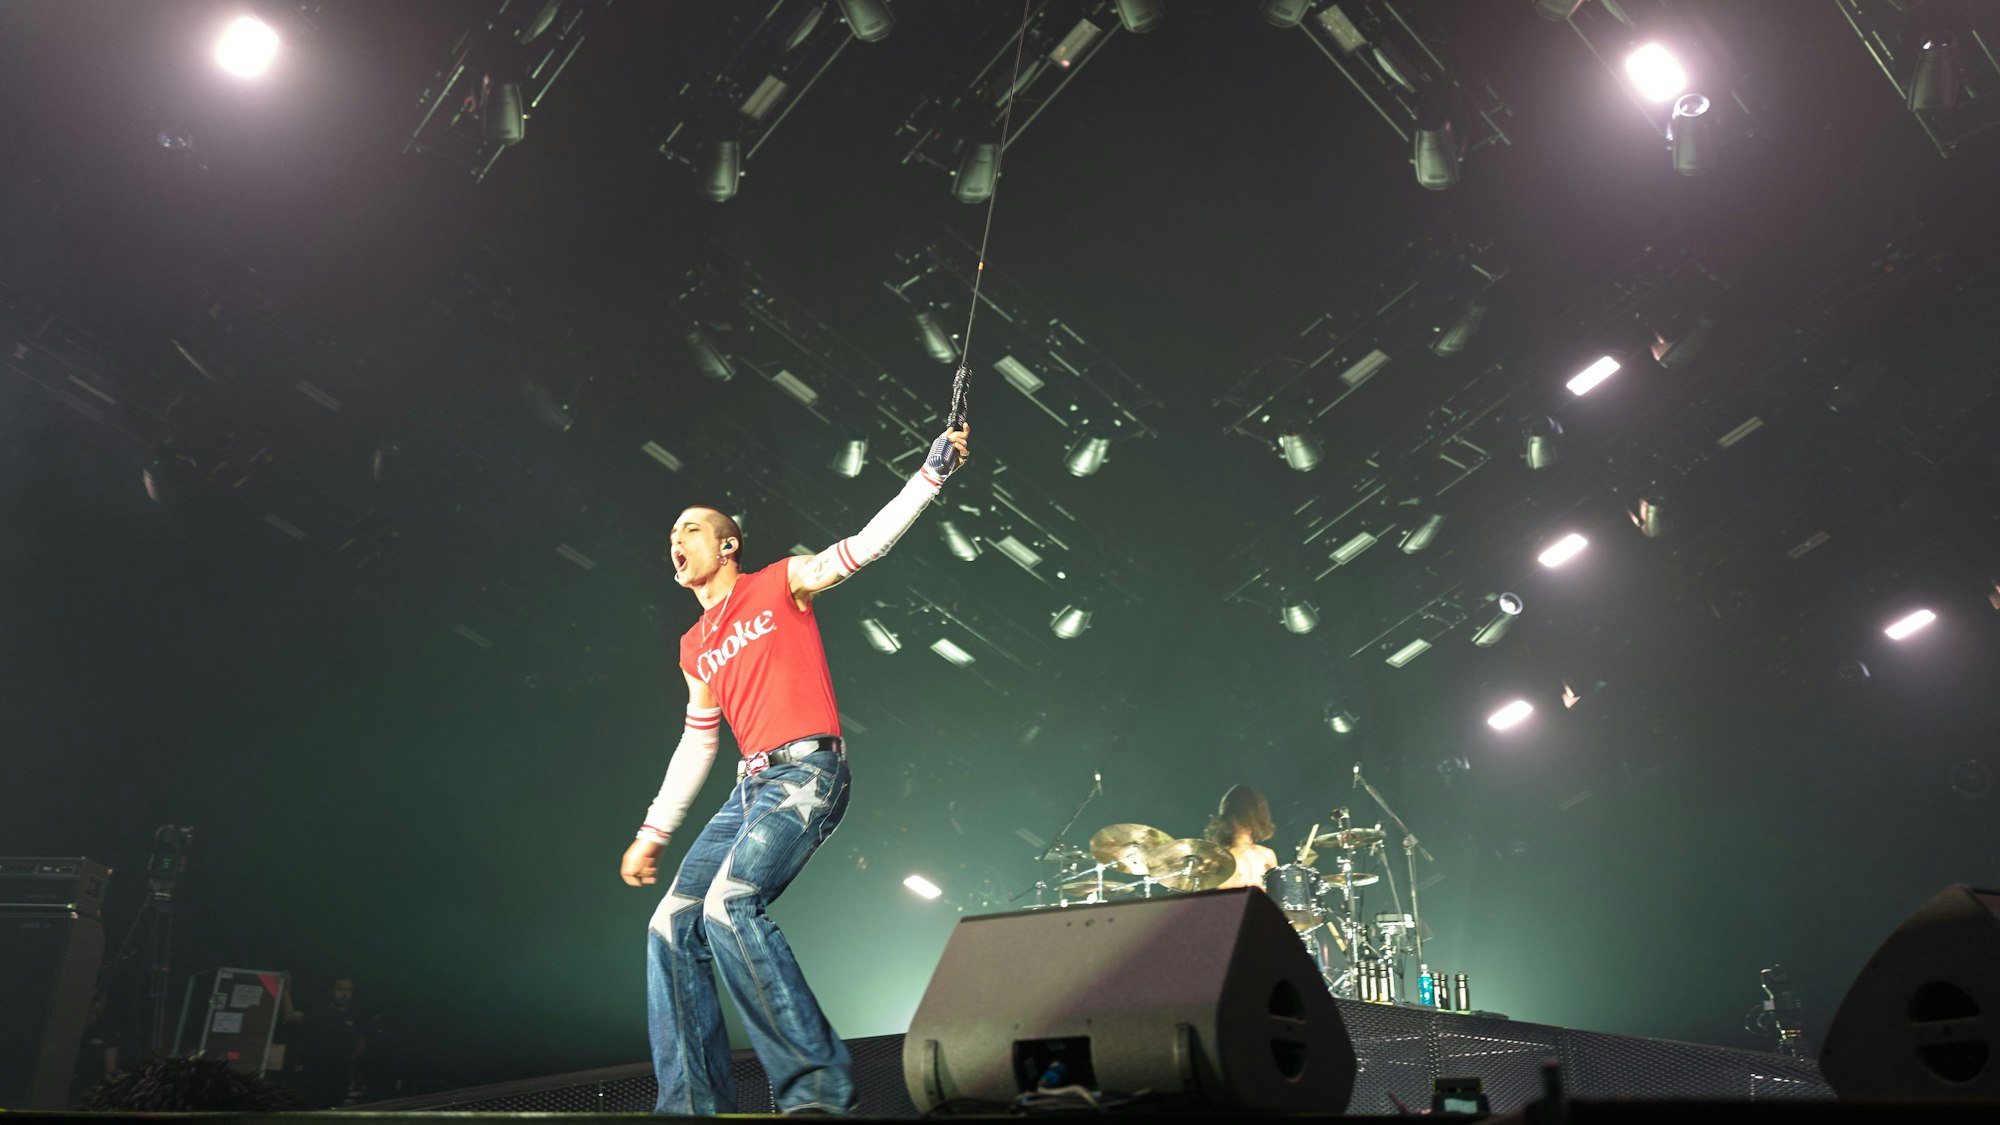 Måneskin-Frontman Damiano David steht auf der Bühne der Lanxess-Arena. Er hält das von der Decke hängende Mikrofon und schreit ins Publikum. Hinter im ist Schlagzeiger Ethan Torchio.